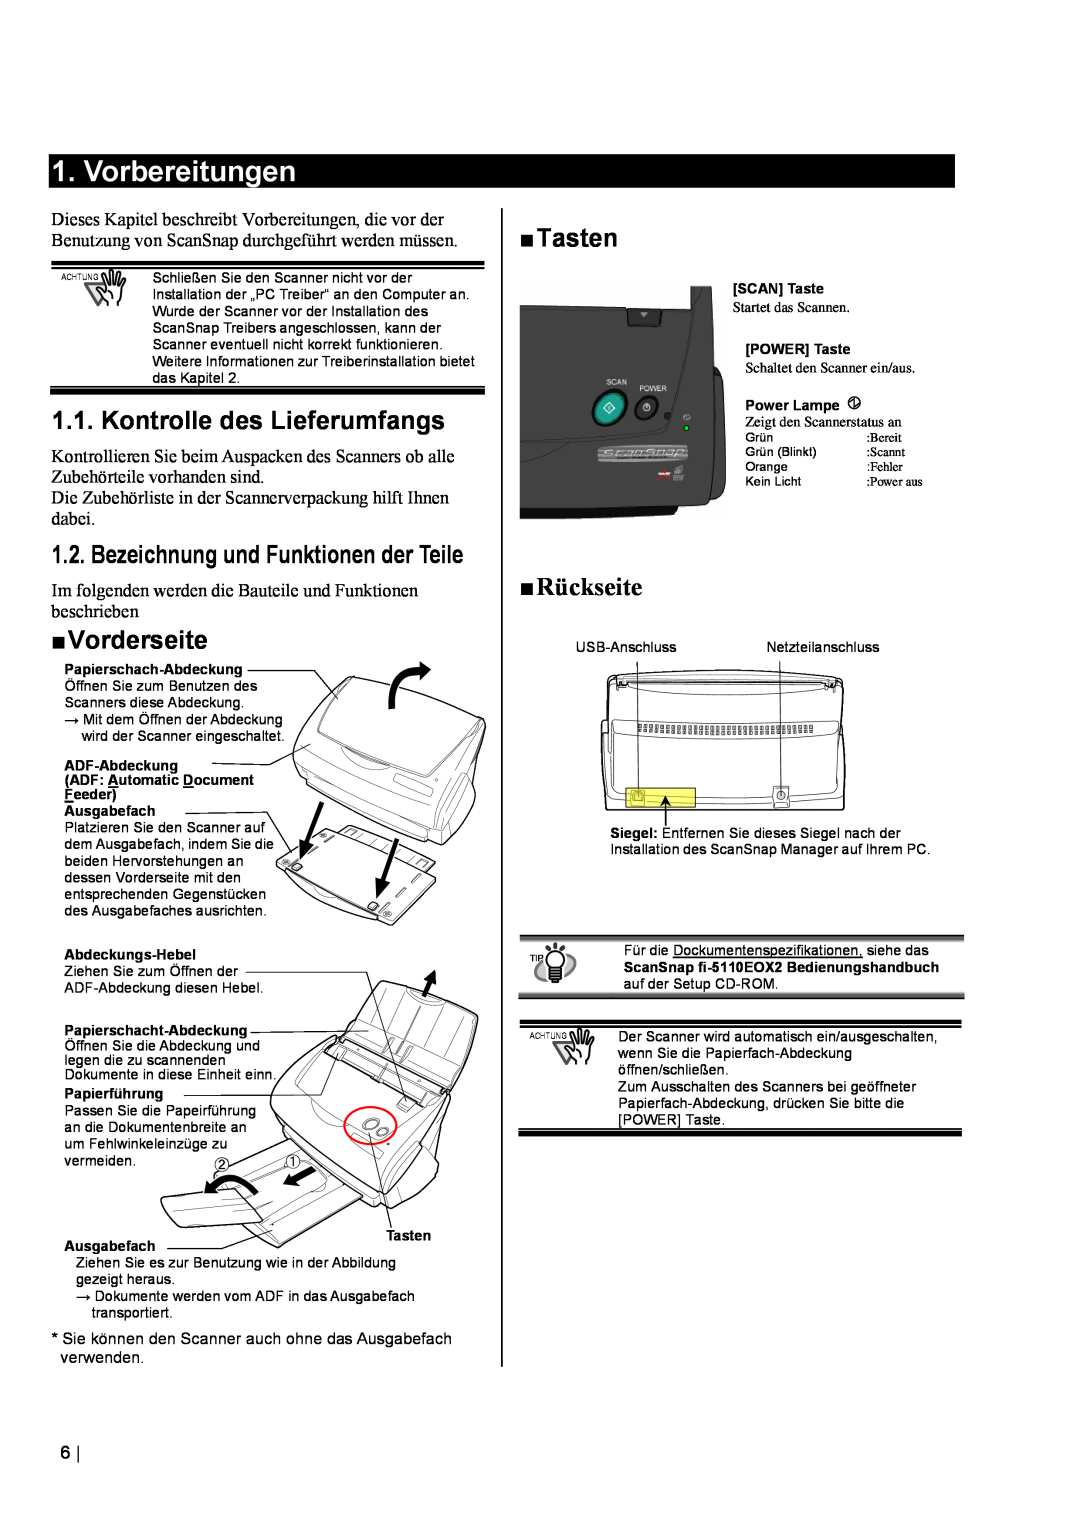 Fujitsu fi-5110EOX2 manual Vorbereitungen, Kontrolle des Lieferumfangs, „ Vorderseite, „ Tasten, „ Rückseite 